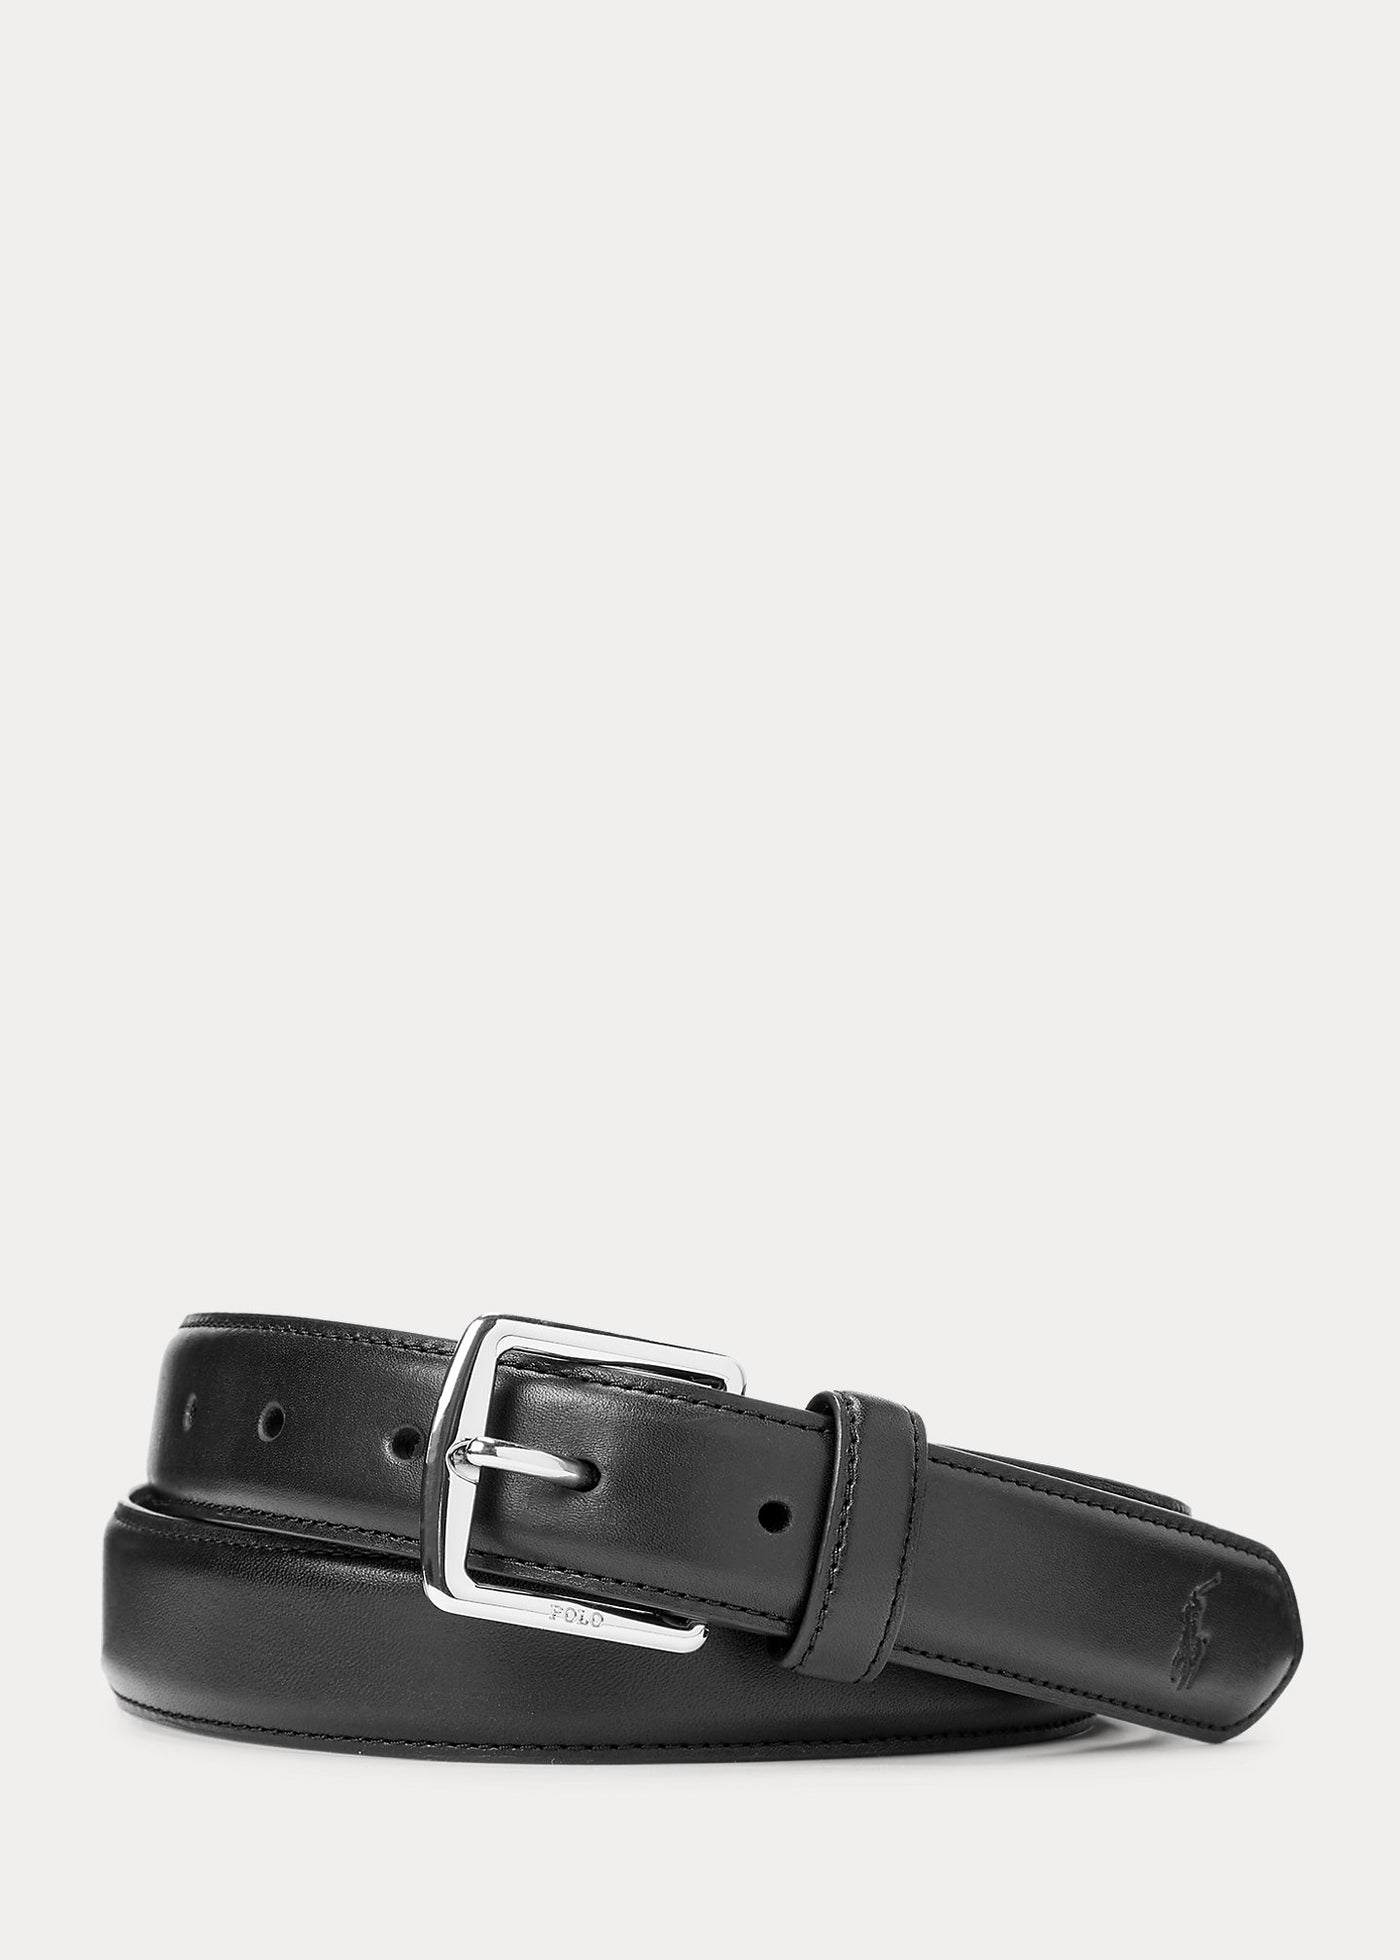 Ralph Lauren Full-Grain Leather Dress Belt | Black